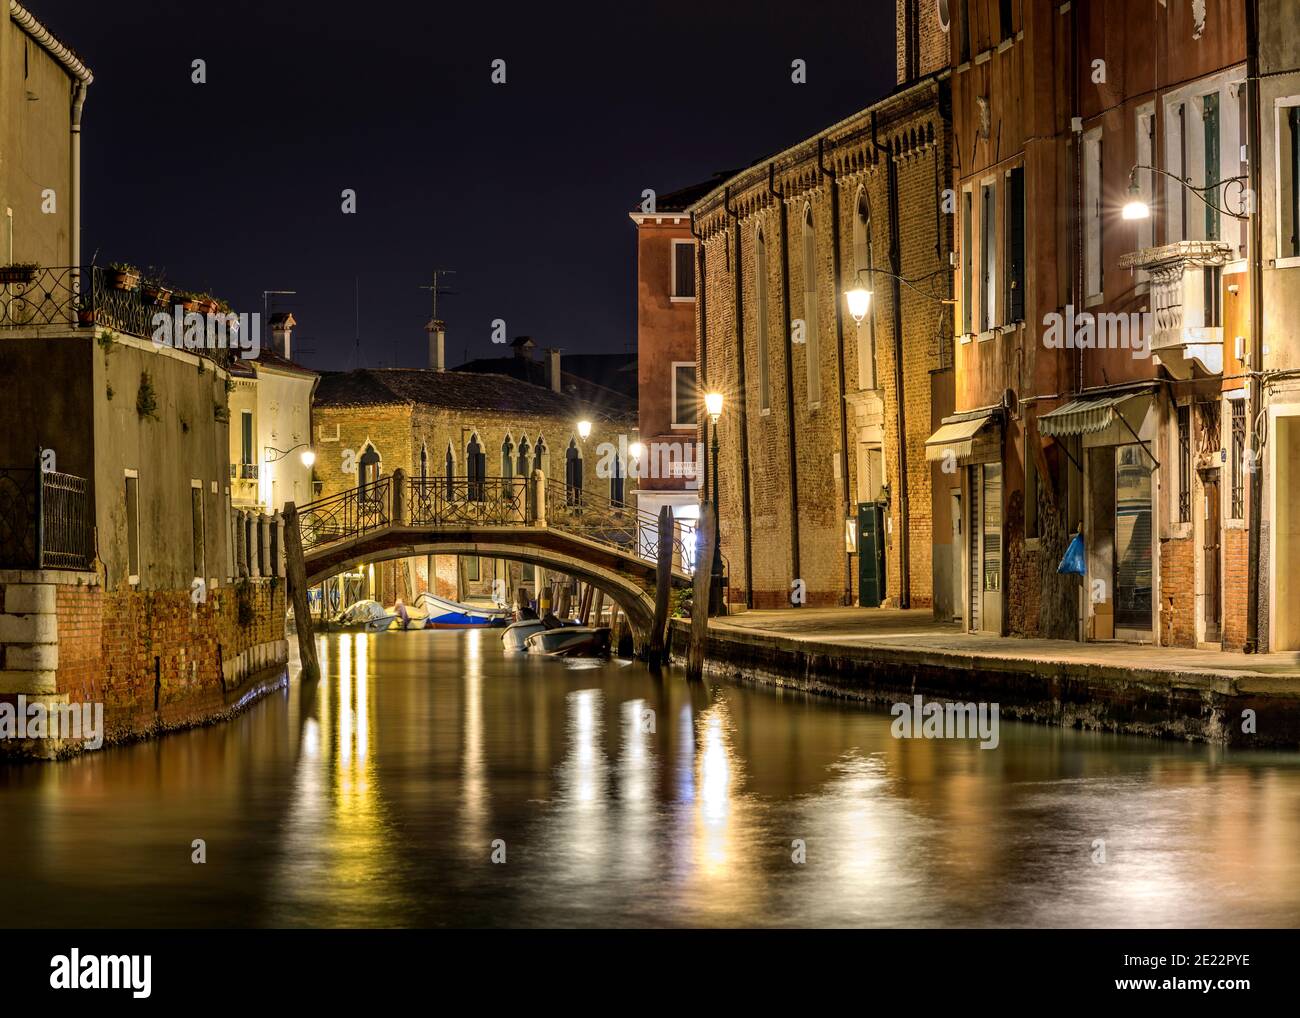 Notte a Murano - Vista notturna di un piccolo ponte di mattoni, Ponte San Pietro Martire, che attraversa uno stretto corso d'acqua, al centro di Murano, Italia. Foto Stock